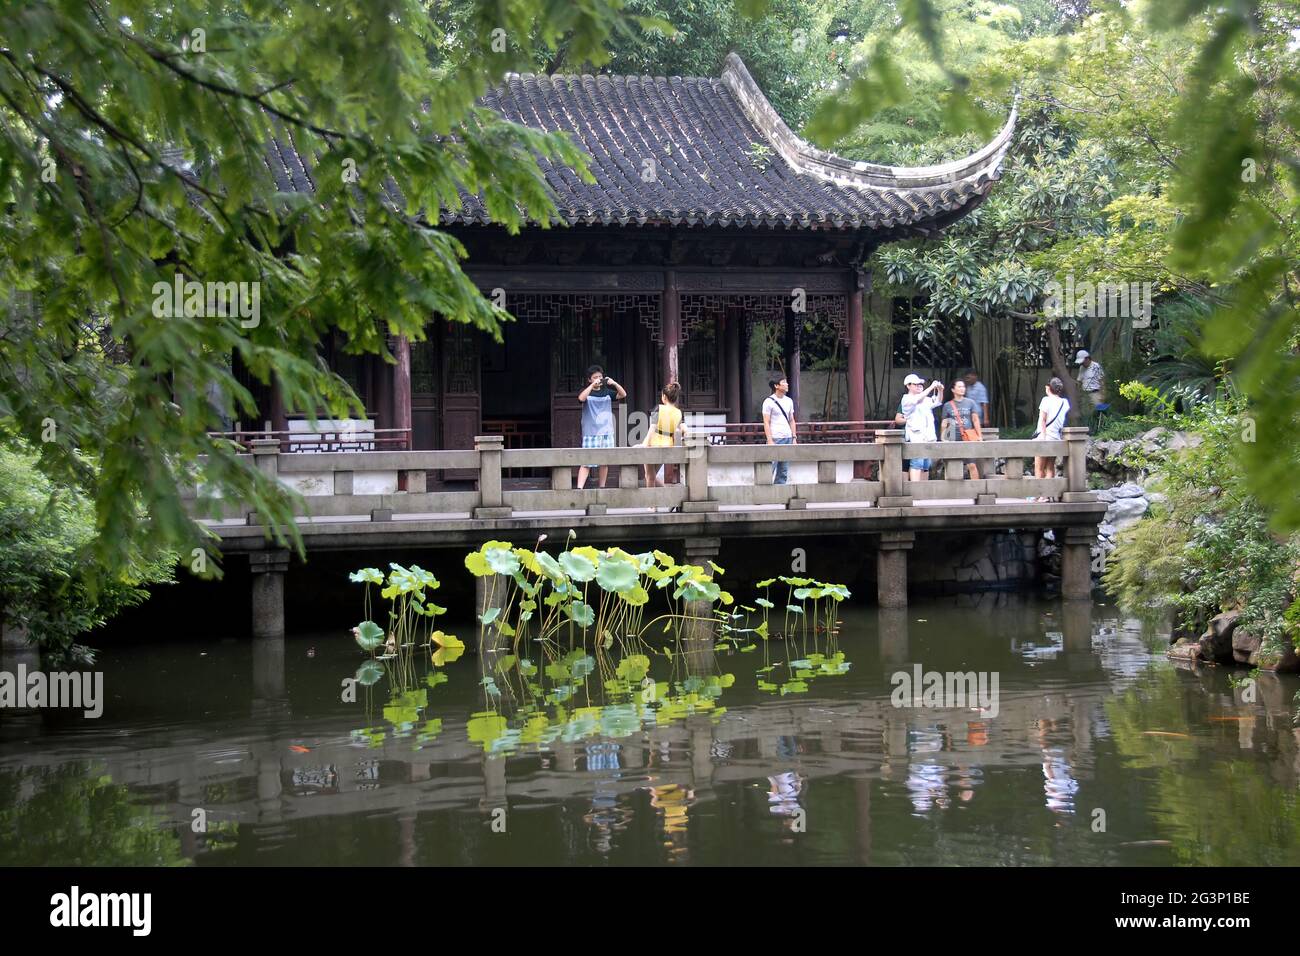 Yu Yuan Garten in der Altstadt von Shanghai, China. Ein traditioneller chinesischer Garten mit Bäumen, Felsen und Wasser. Menschen machen Fotos in der Nähe eines Pavillons. Stockfoto